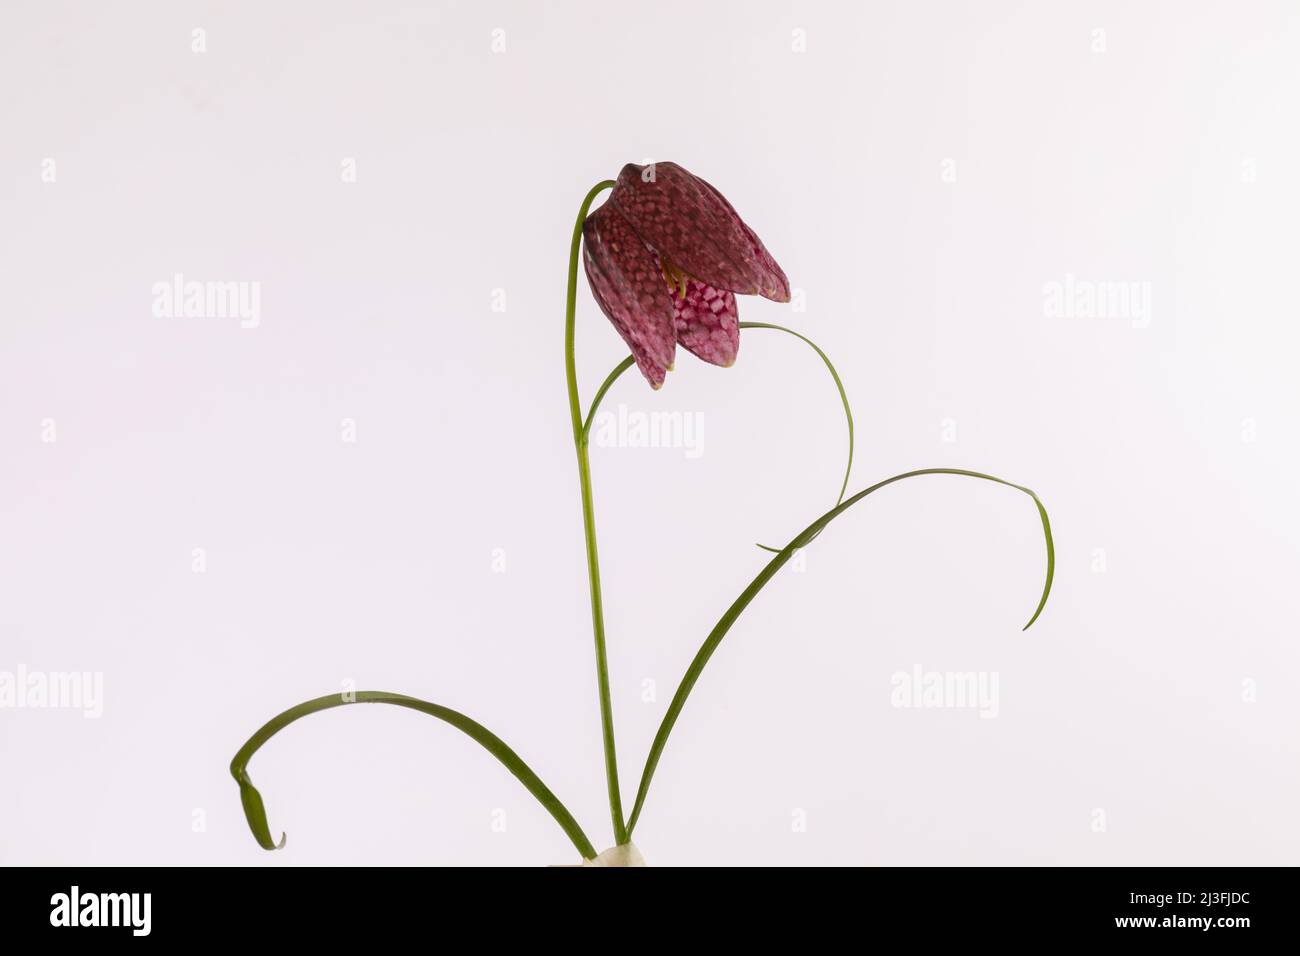 Flor aislada de la fríllaria meleagris serpientes cabeza sobre un fondo blanco Foto de stock